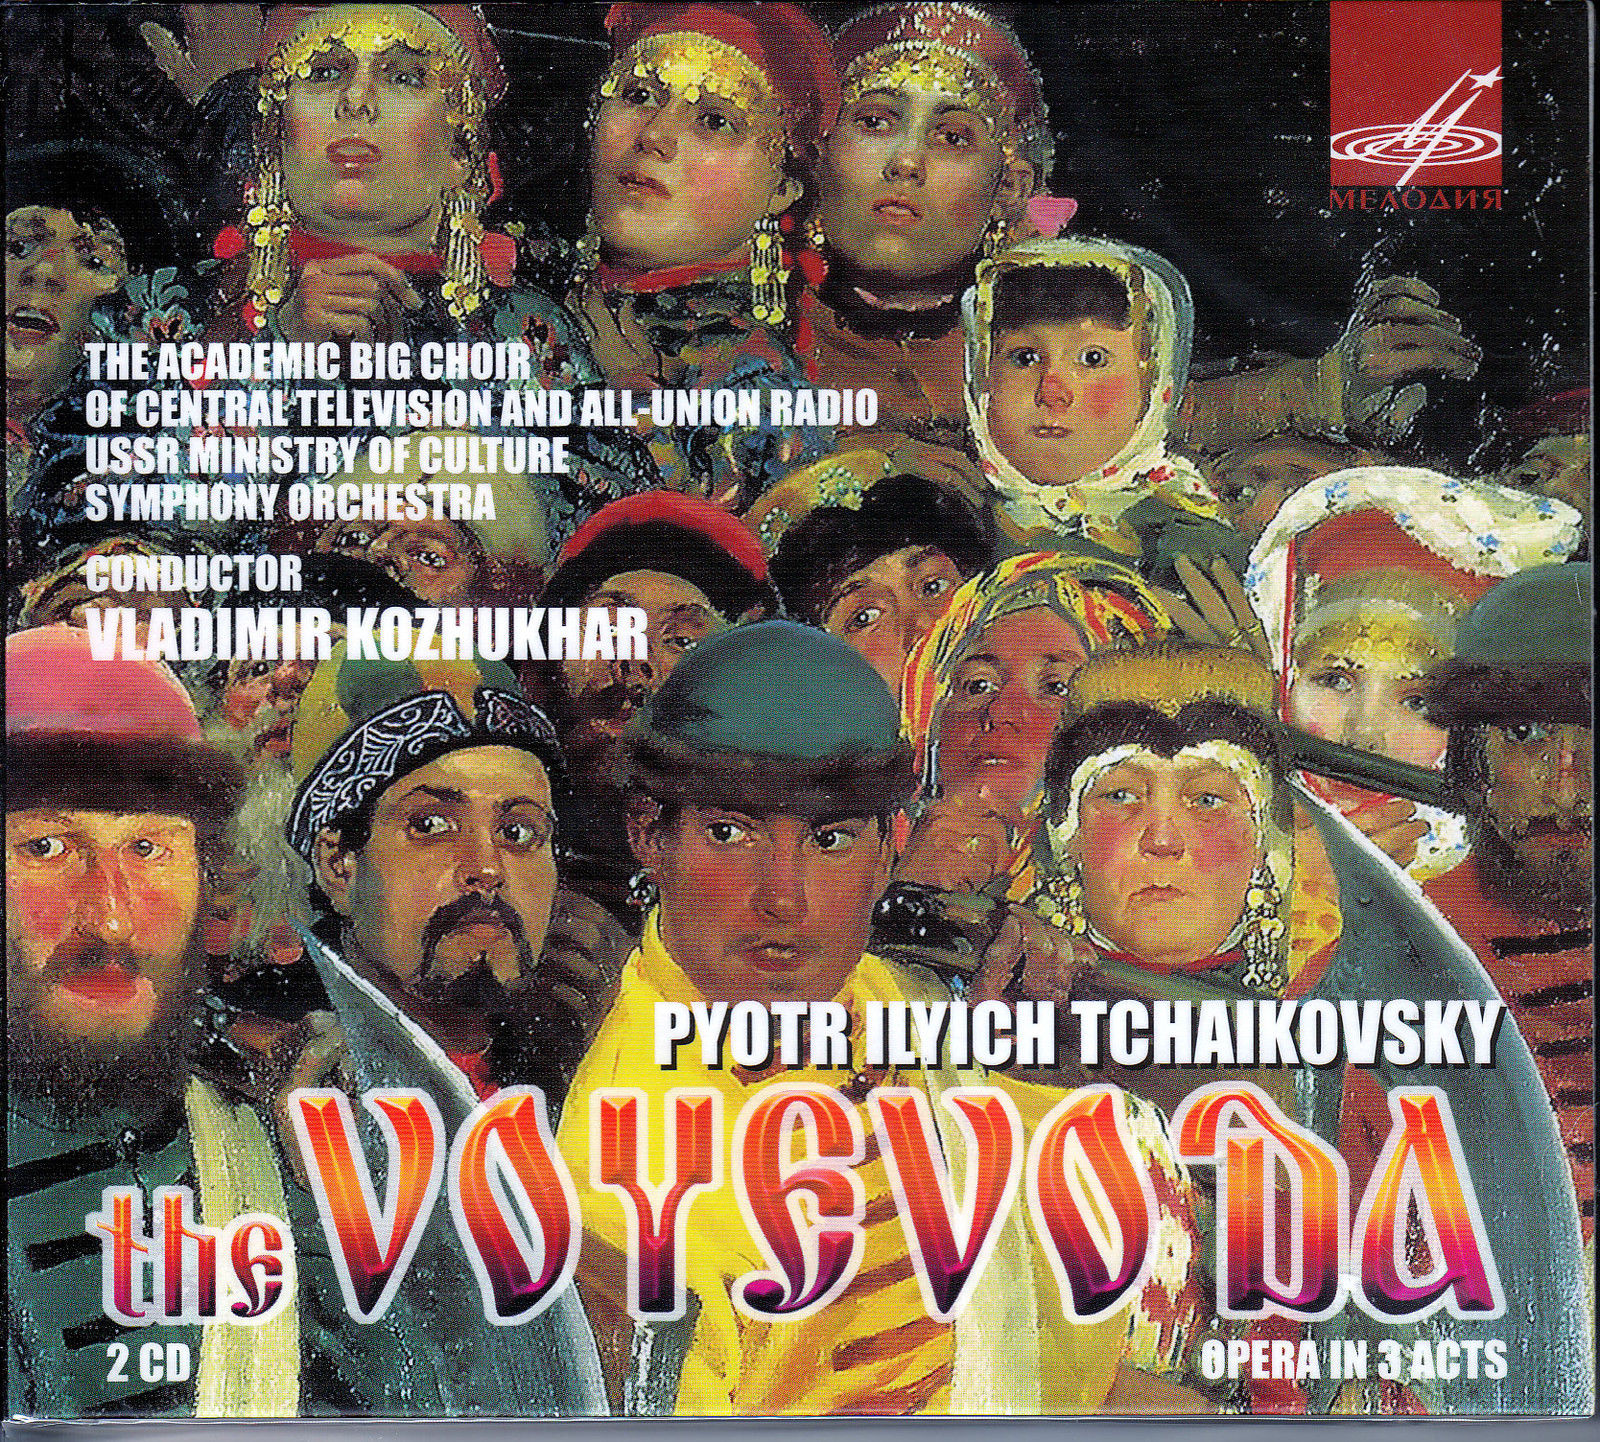 П. Чайковский. Опера "Воевода" (2 CD)